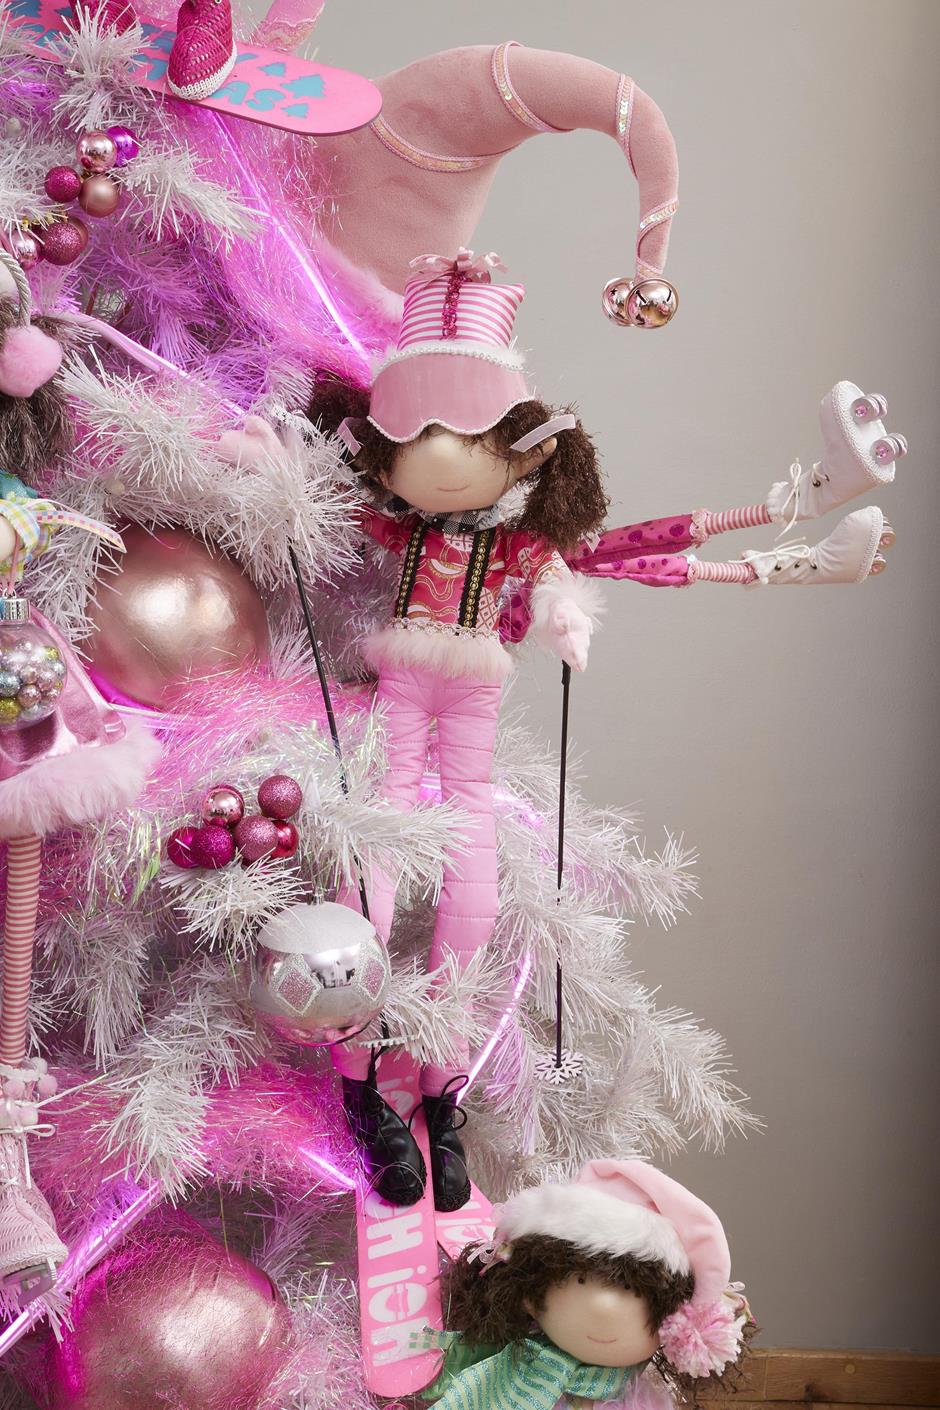 muñeca, duende, duenda, esquiadora, esquís, ho ho ho, merry christmas, navidad, winter, invierno, xmas, handmade, hecho a mano, negro, rosa, dorado, blanco, pink, rosa mexicano, fucsia, fiusha, xmas ski, merry pinkmas, queca designs